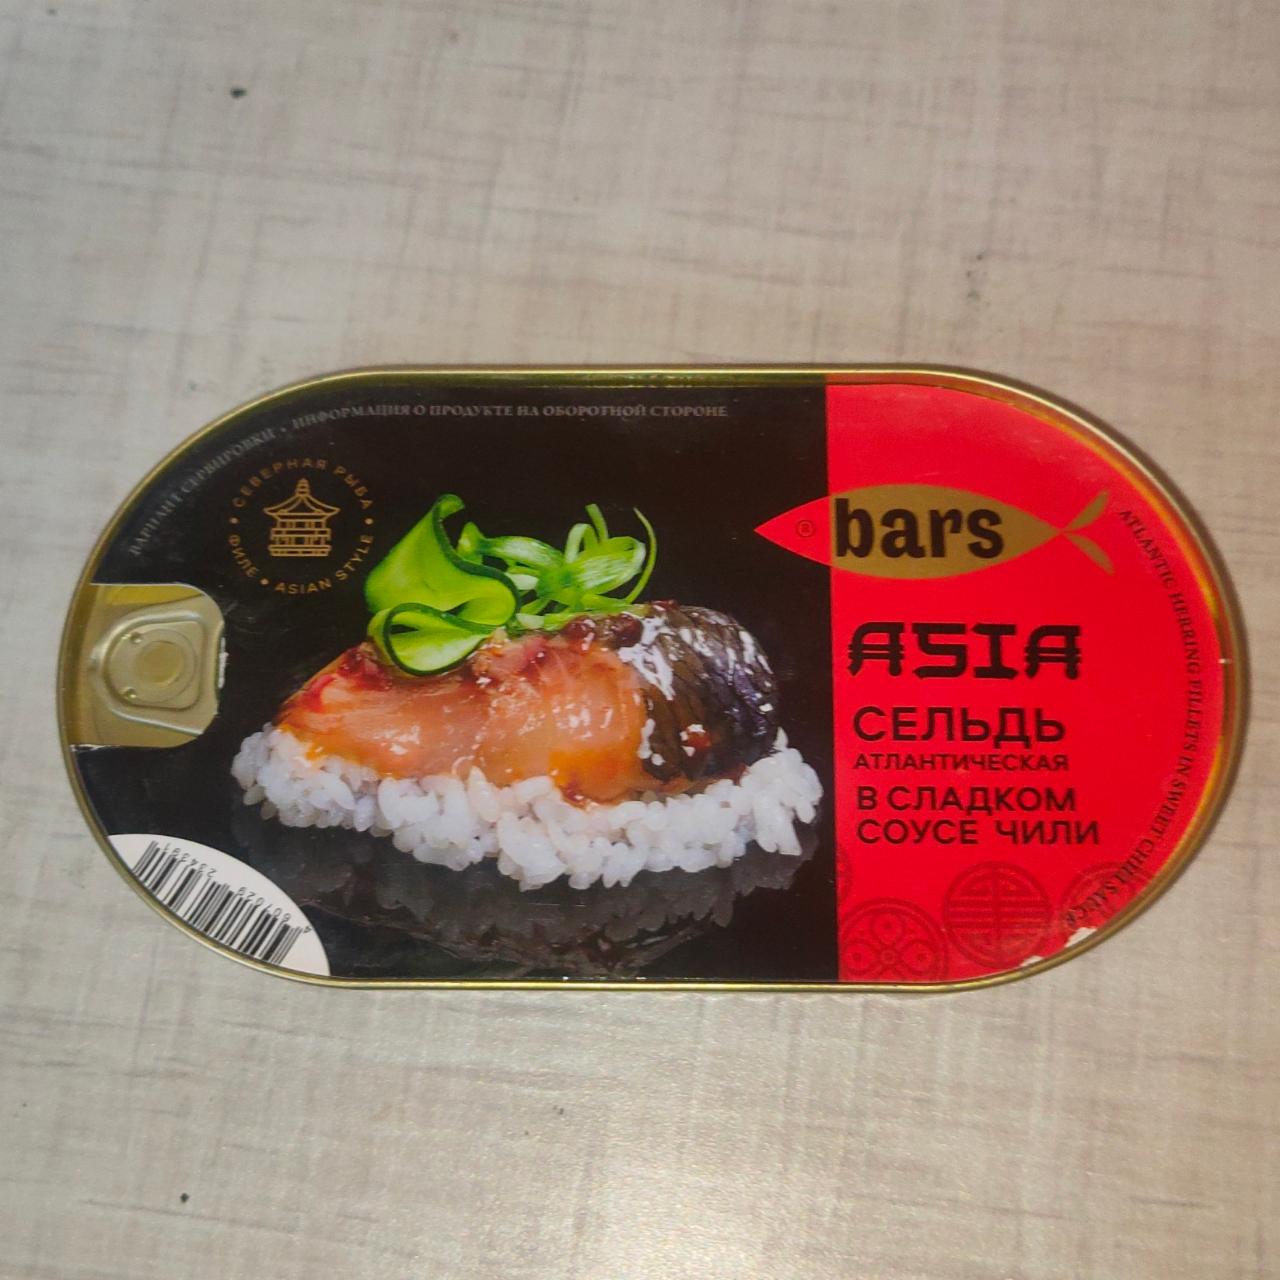 Фото - Asia сельдь атлантическая в сладком соусе чили Bars